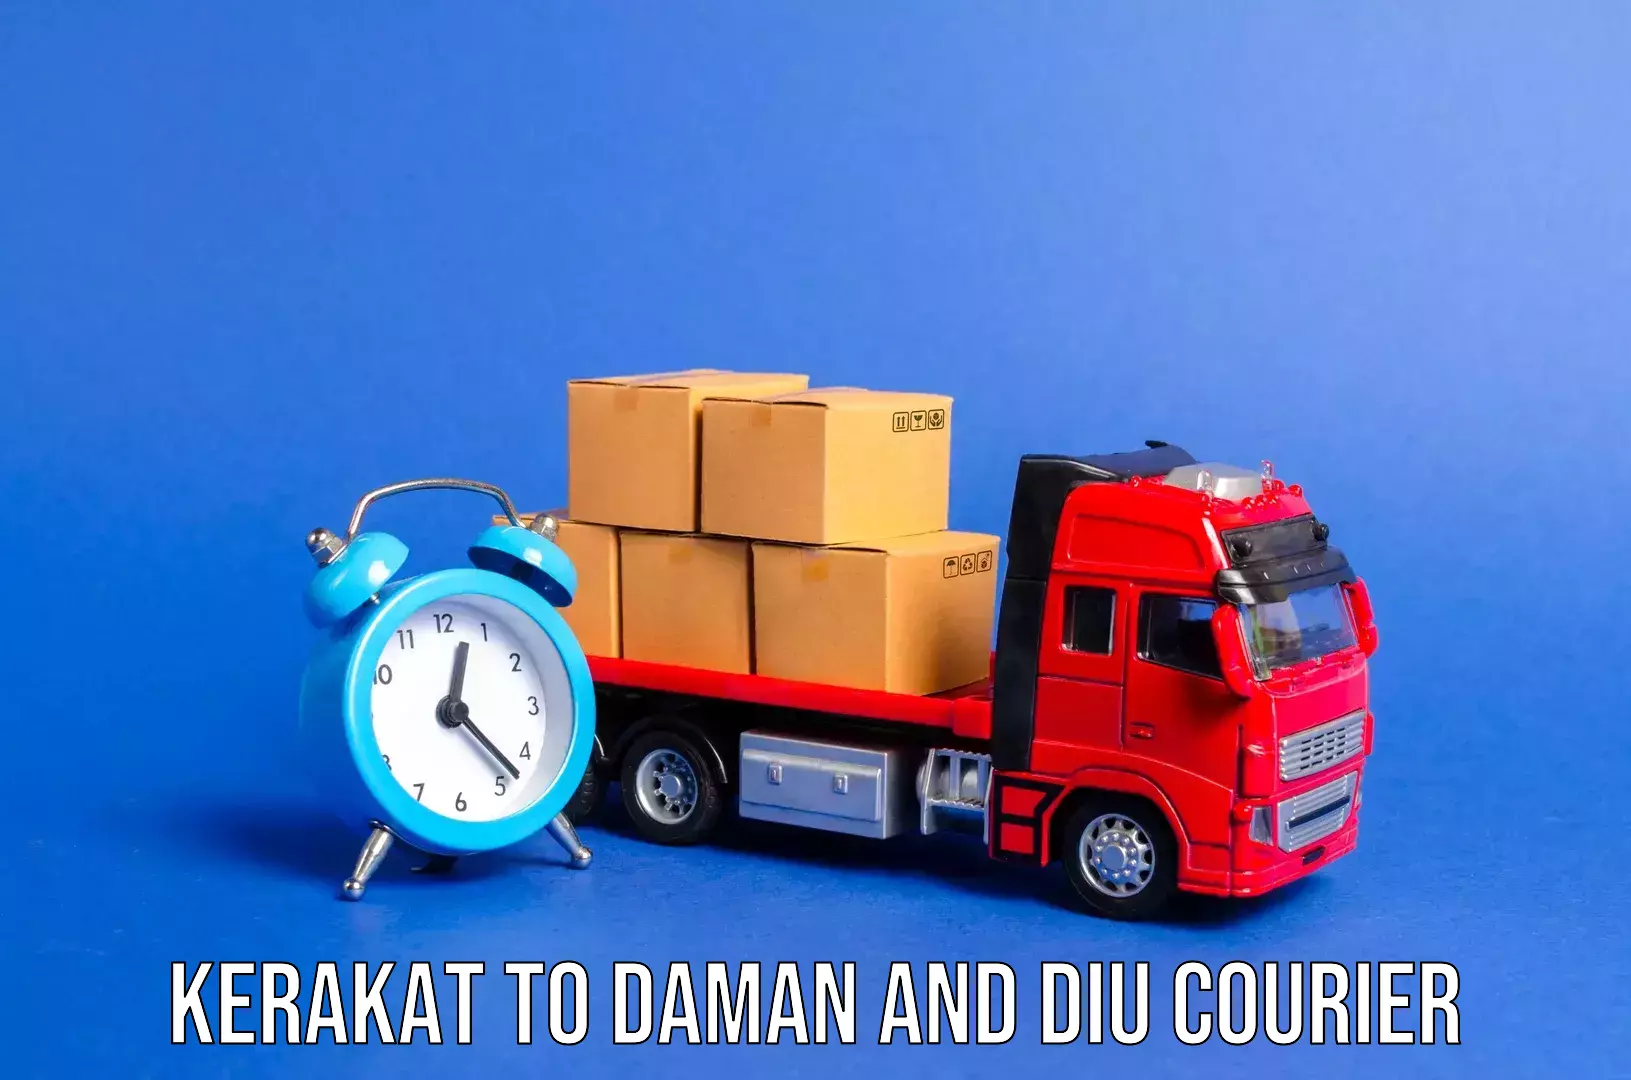 Holiday season luggage delivery Kerakat to Daman and Diu